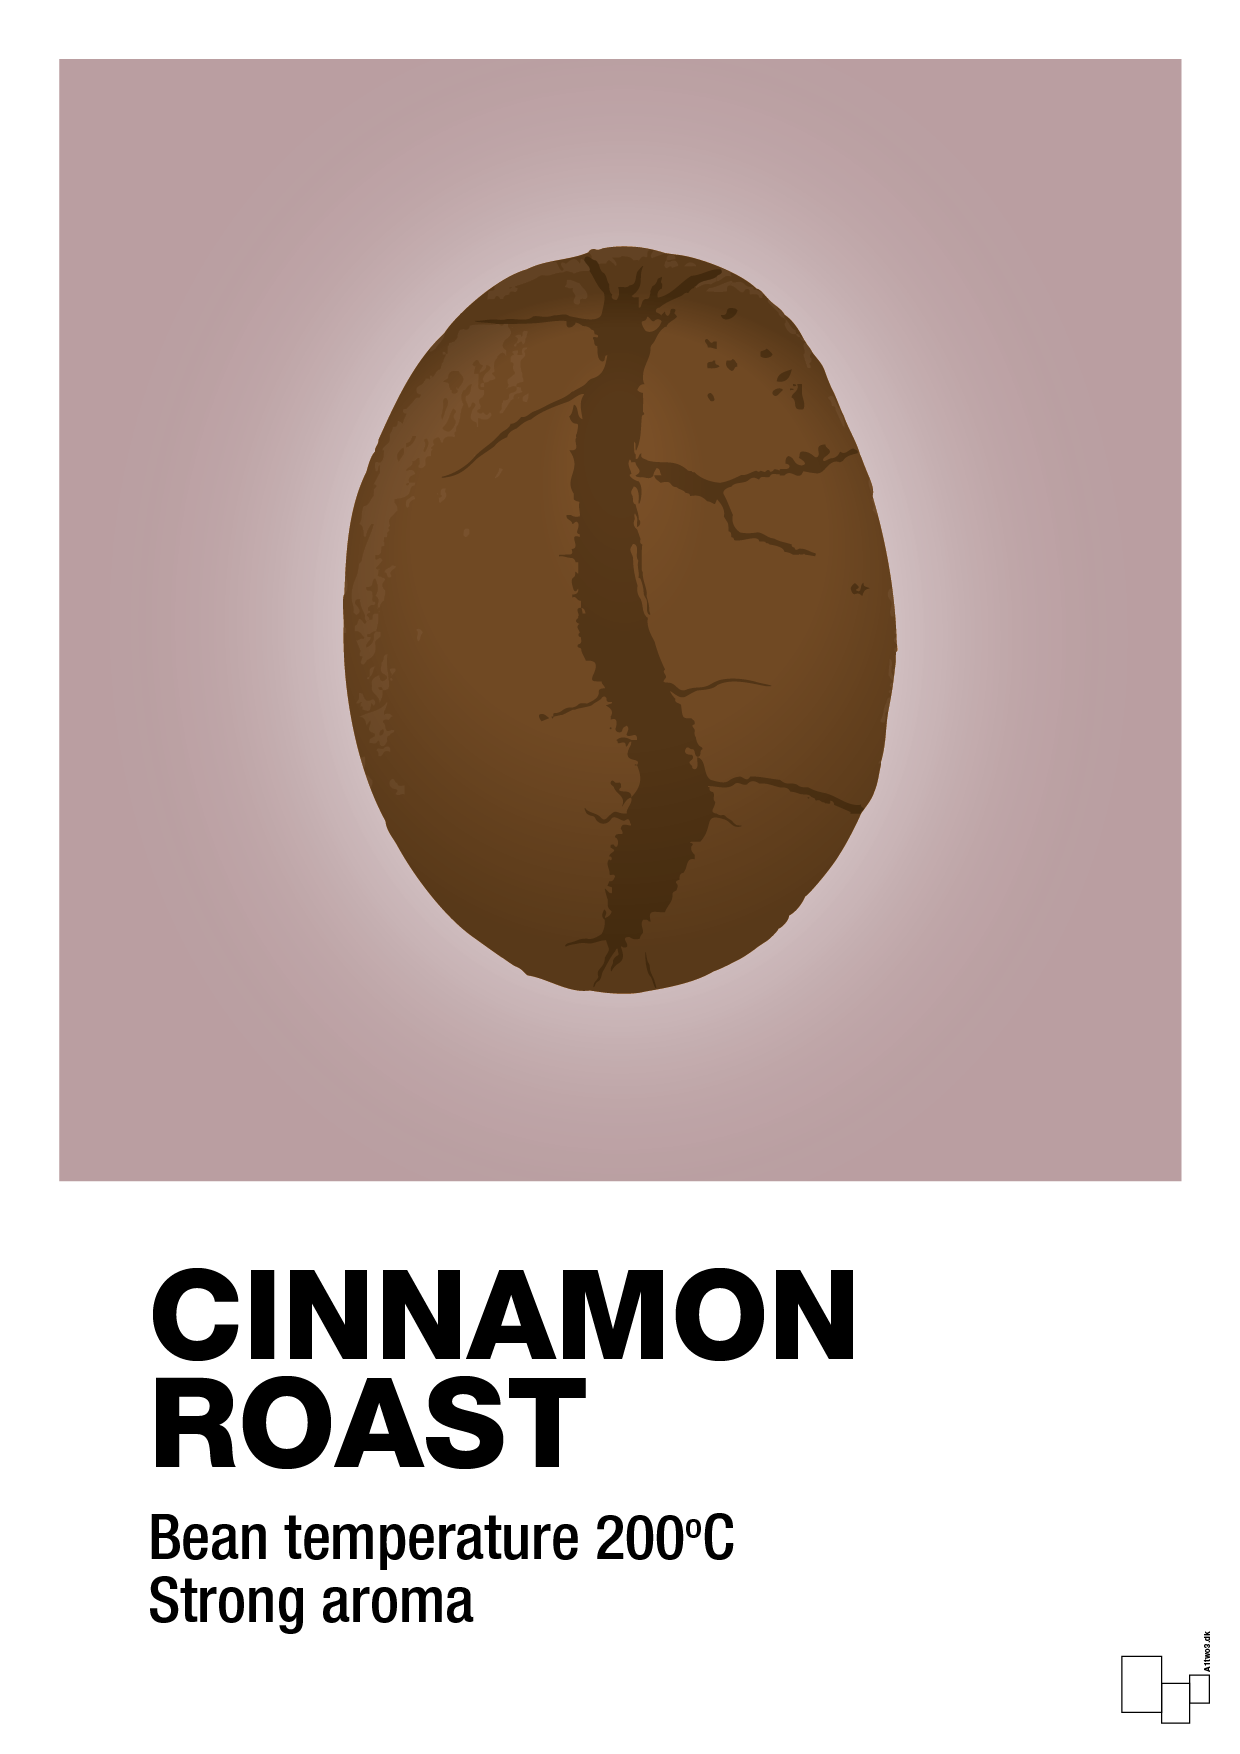 cinnamom roast - Plakat med Mad & Drikke i Light Rose